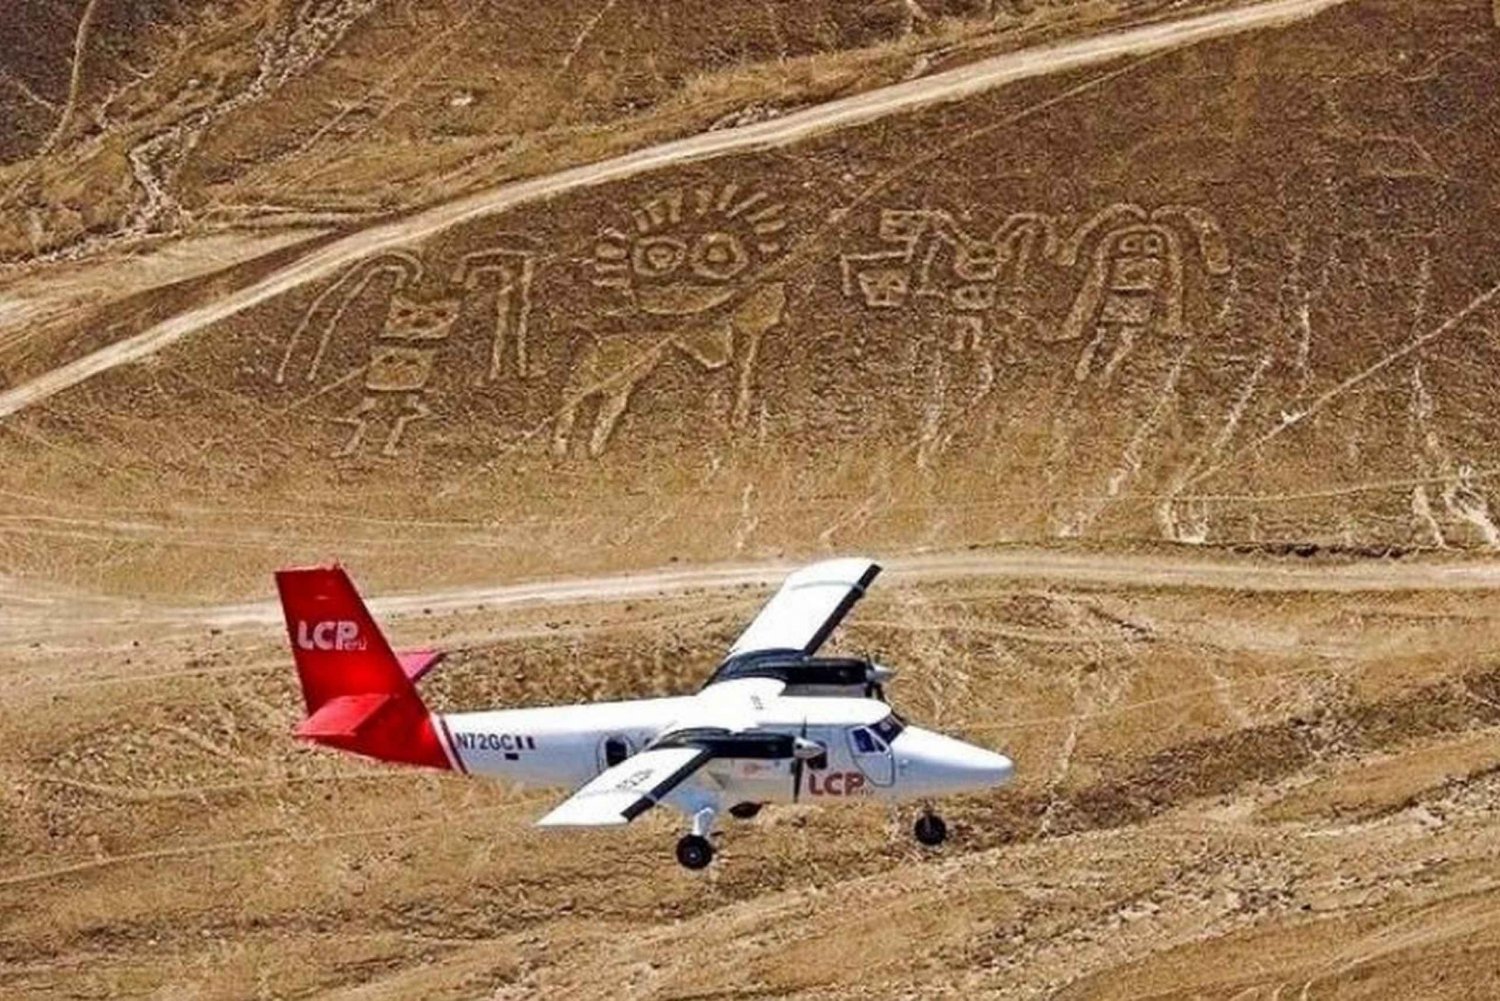 Nazca Lines heldag från Lima: Flyg över mystiska geoglyfer